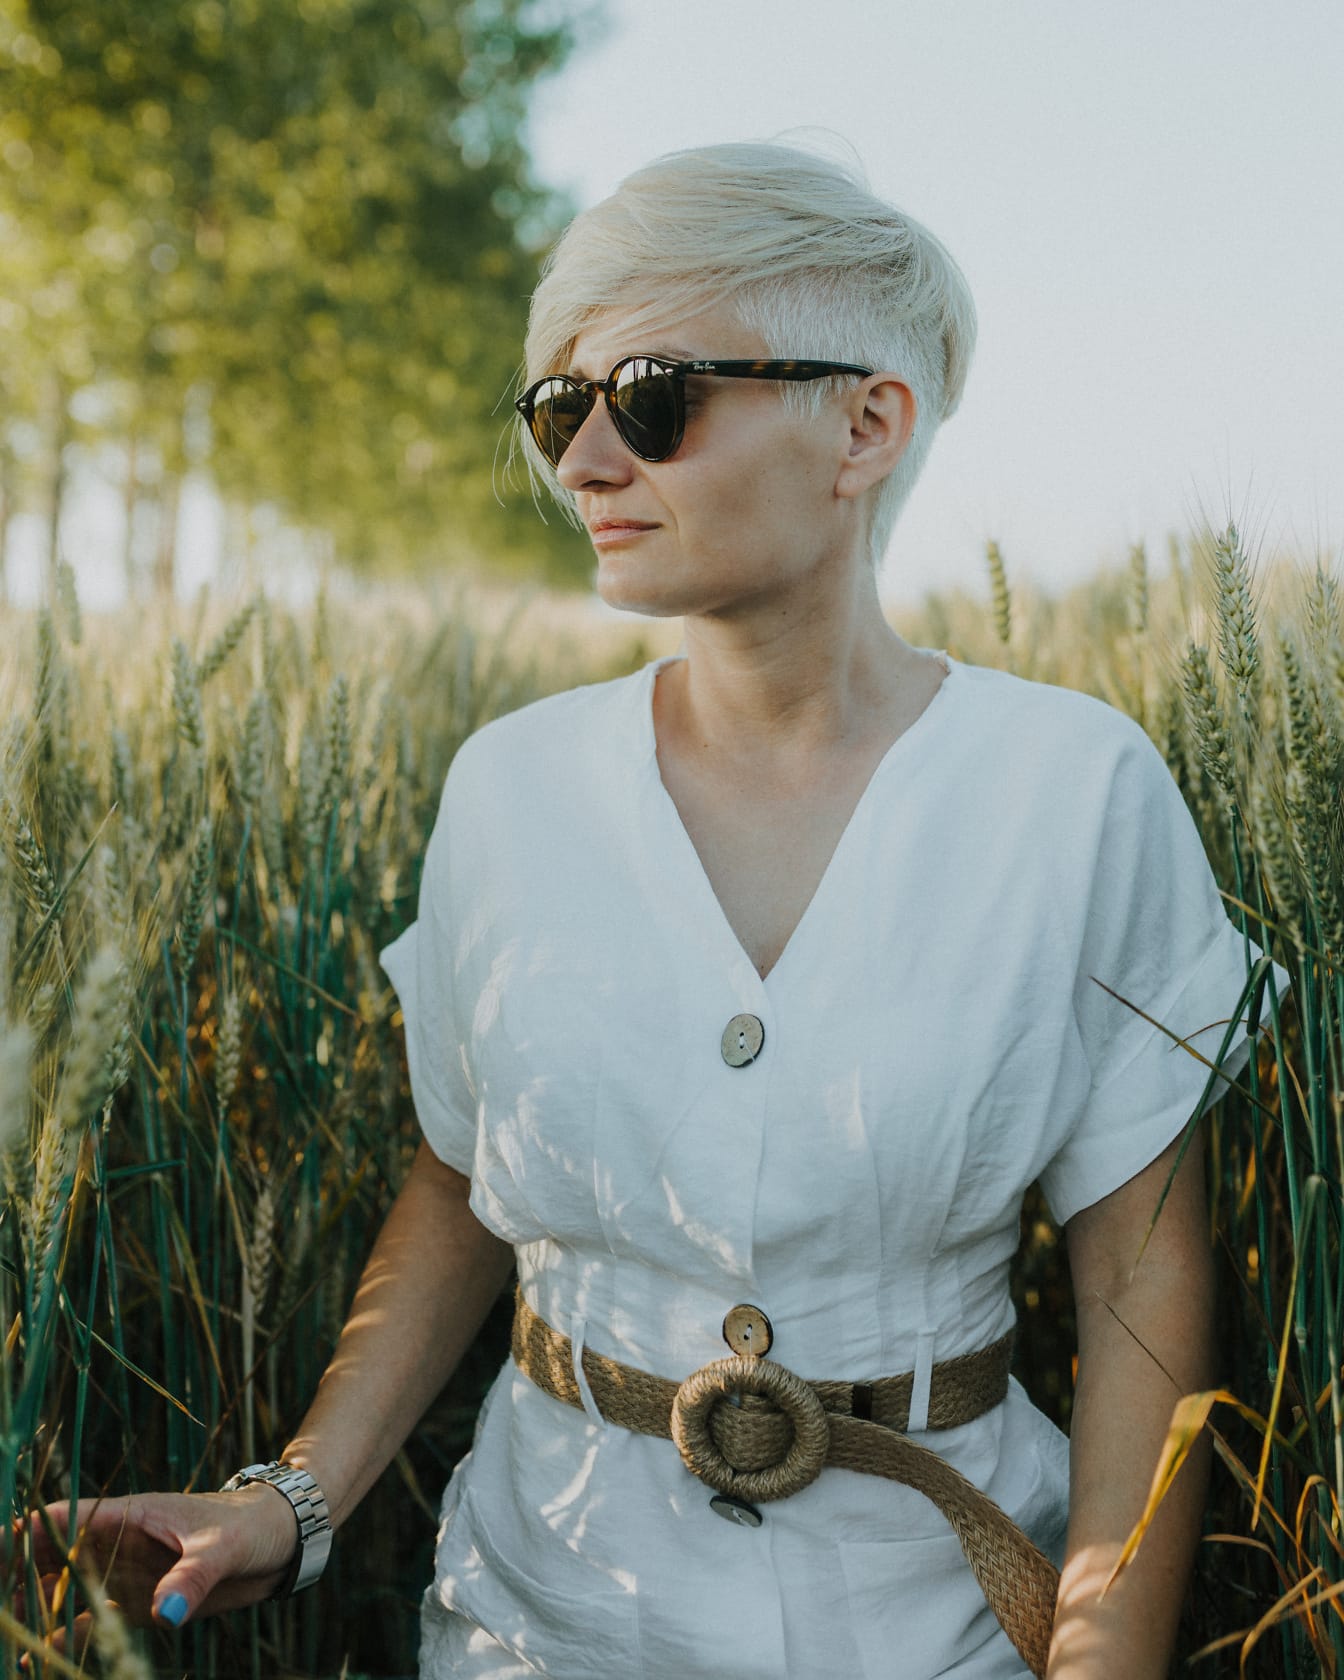 Mulher do campo de boa aparência em um campo de trigo usando vestido branco e óculos escuros